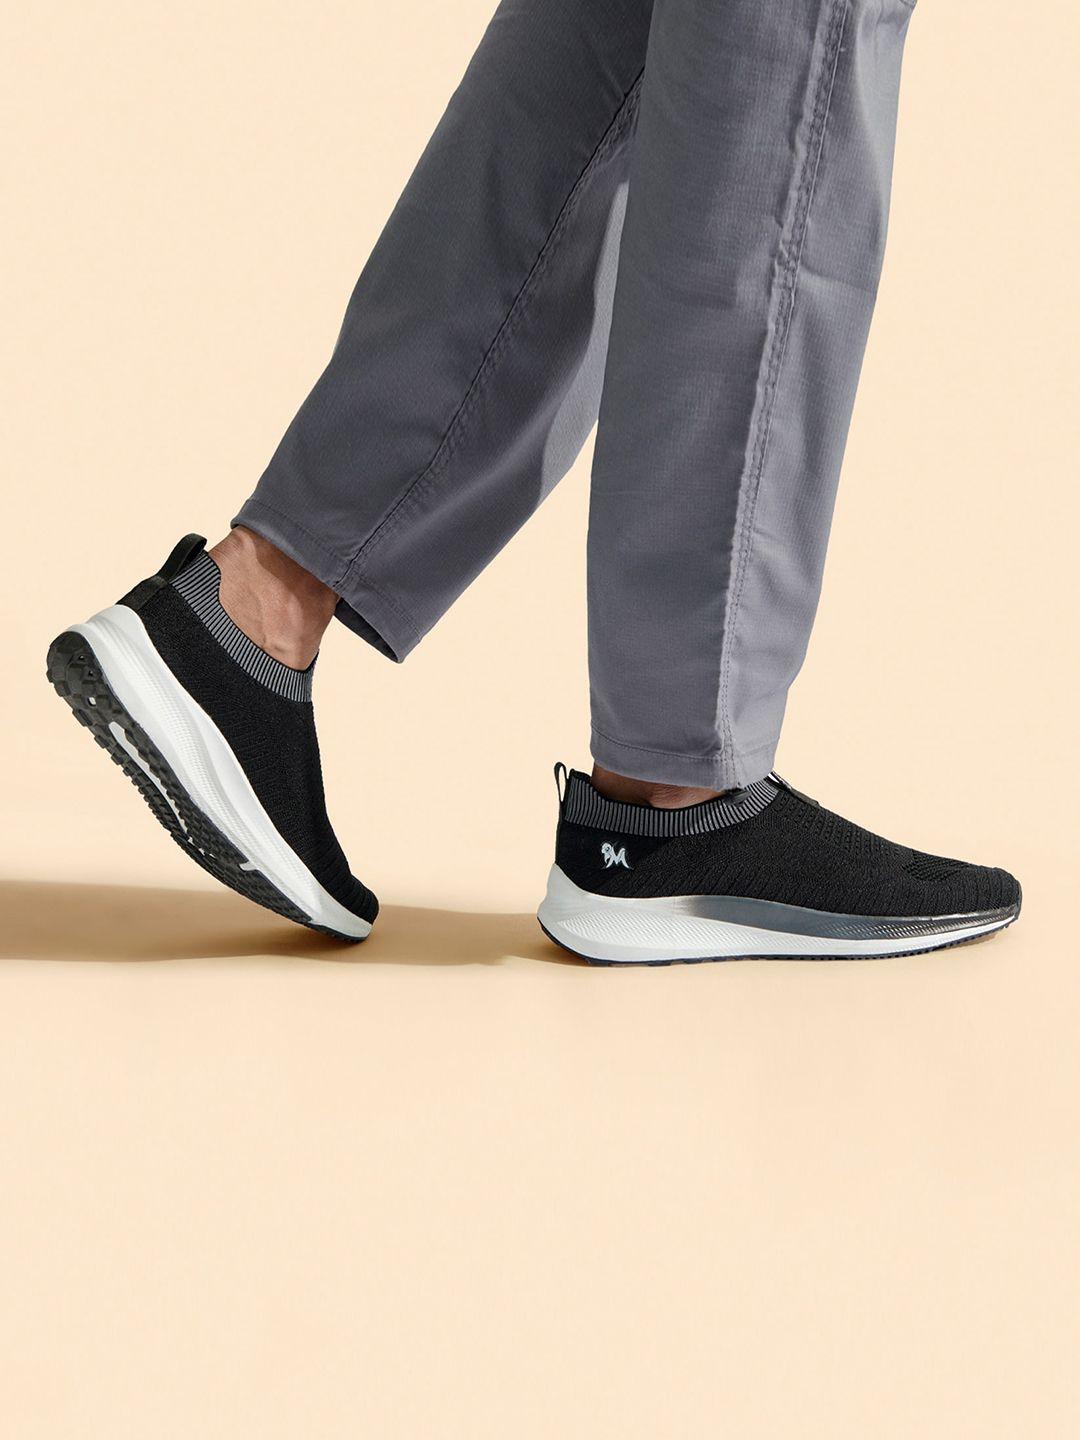 neemans unisex textured lightweight comfort insole contrast sole slip-on sneakers